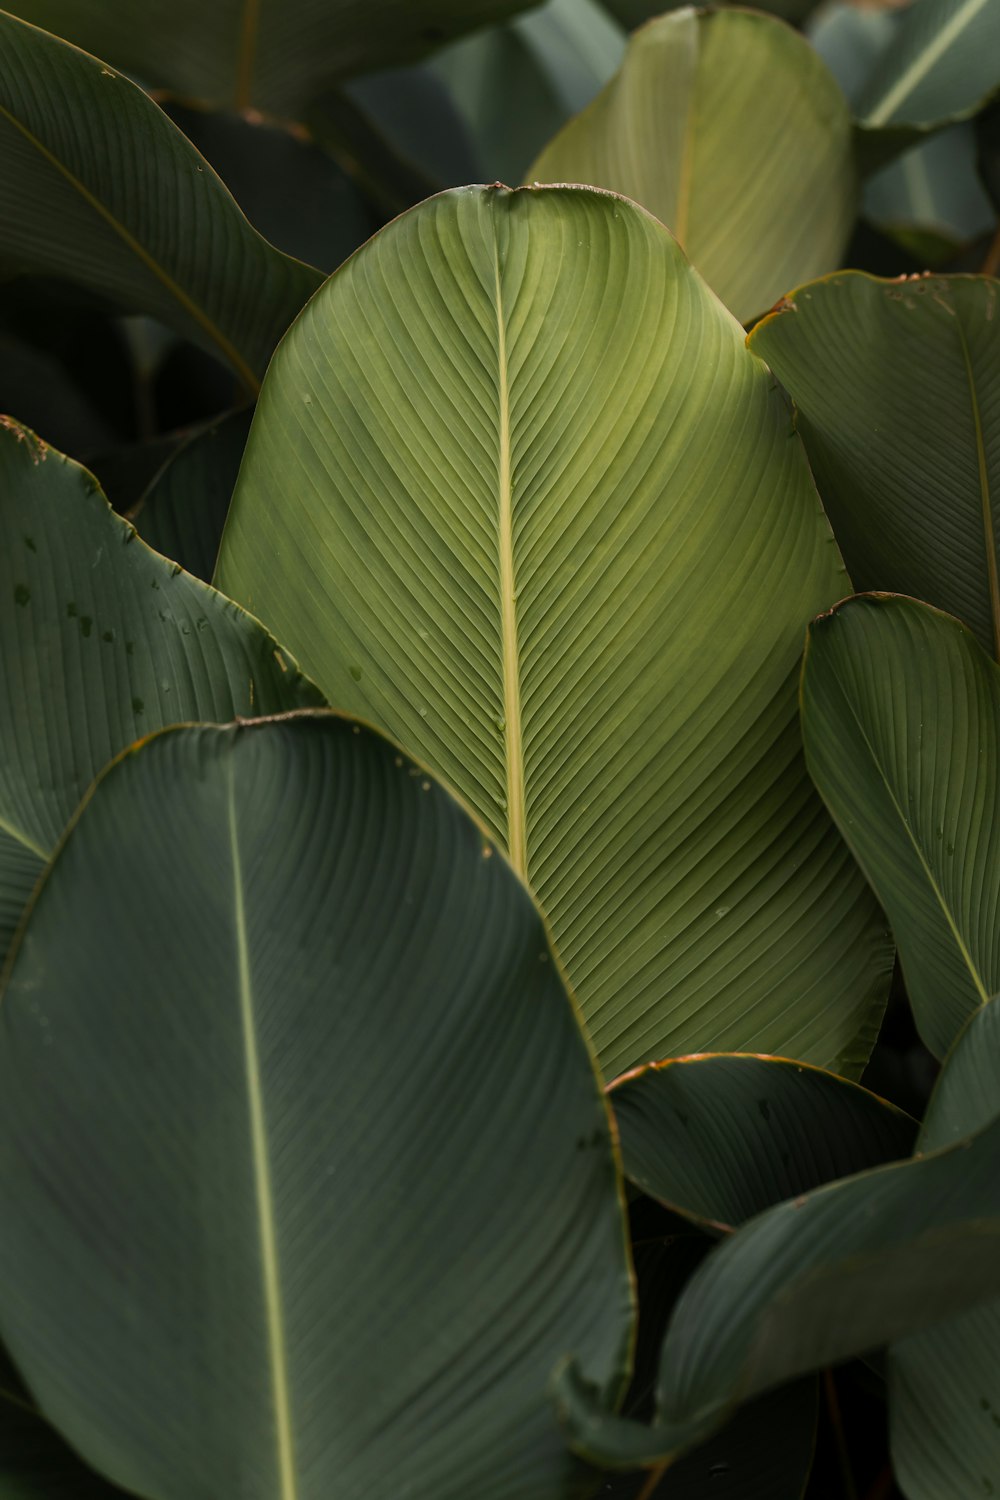 foglia di banano verde in fotografia ravvicinata